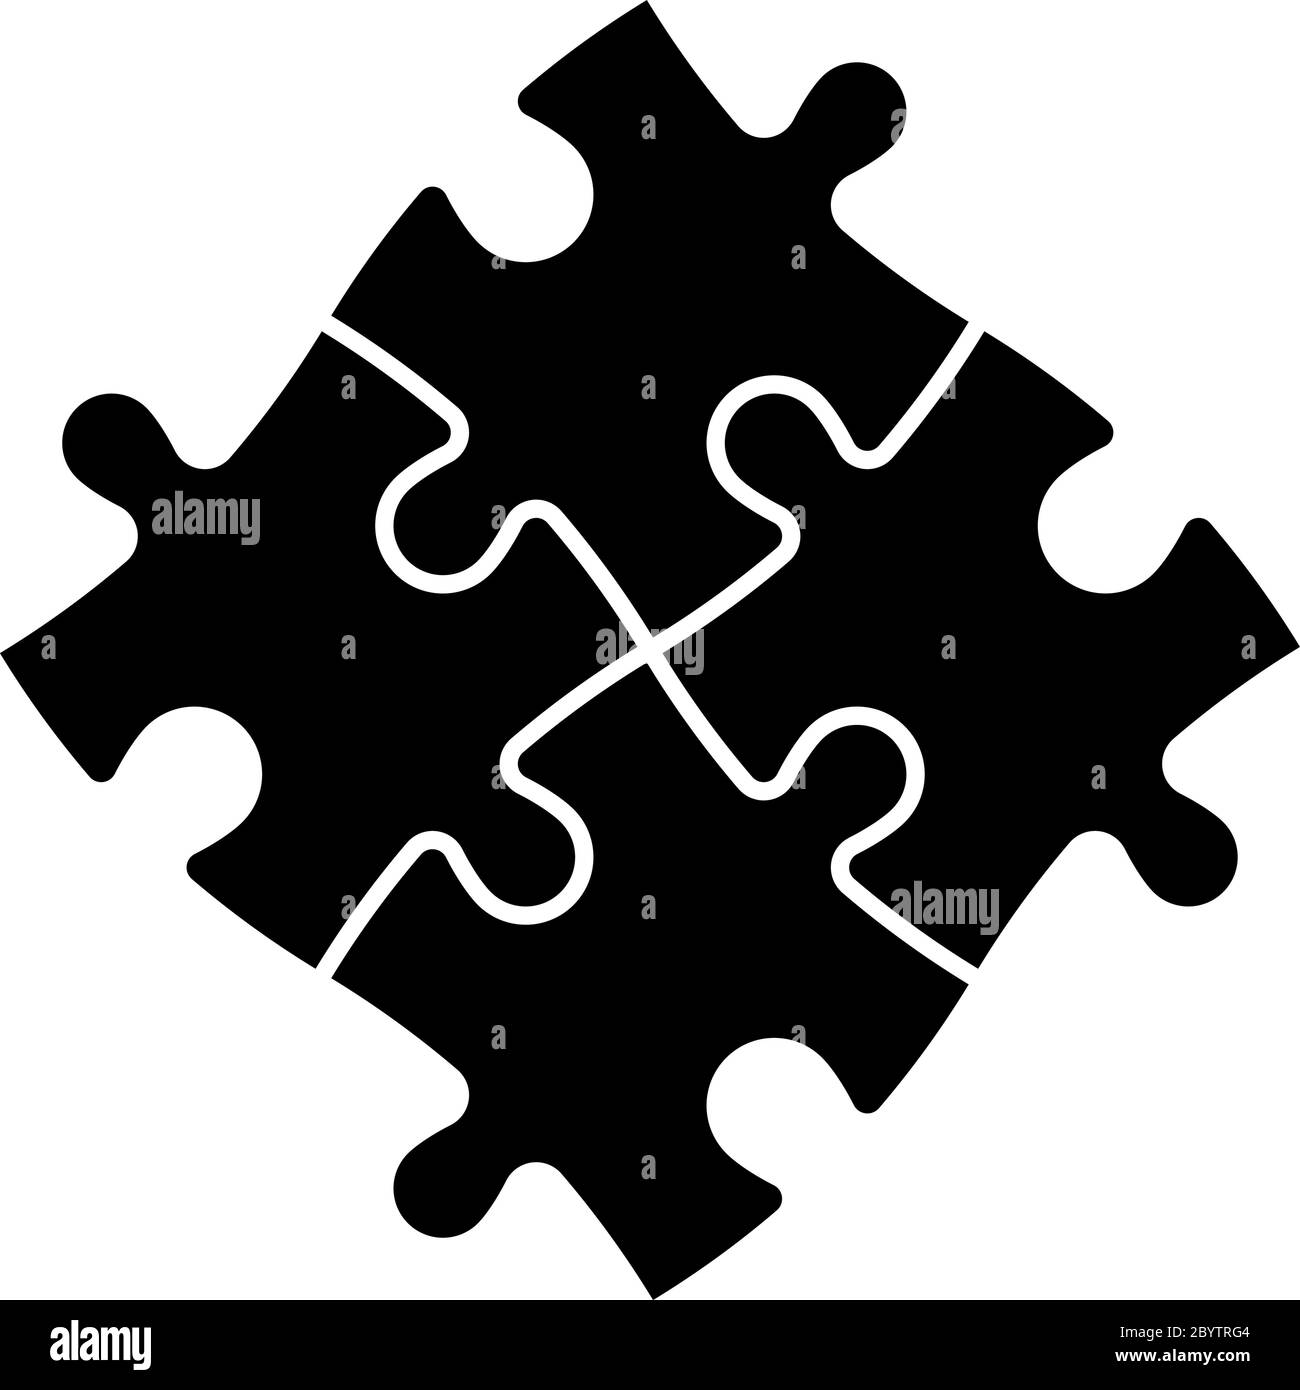 Gelöst Puzzle von vier schwarzen Teilen. Teamzusammenarbeit, Teamarbeit oder Lösungsgeschäft. Einfache flache Vektorgrafik. Stock Vektor